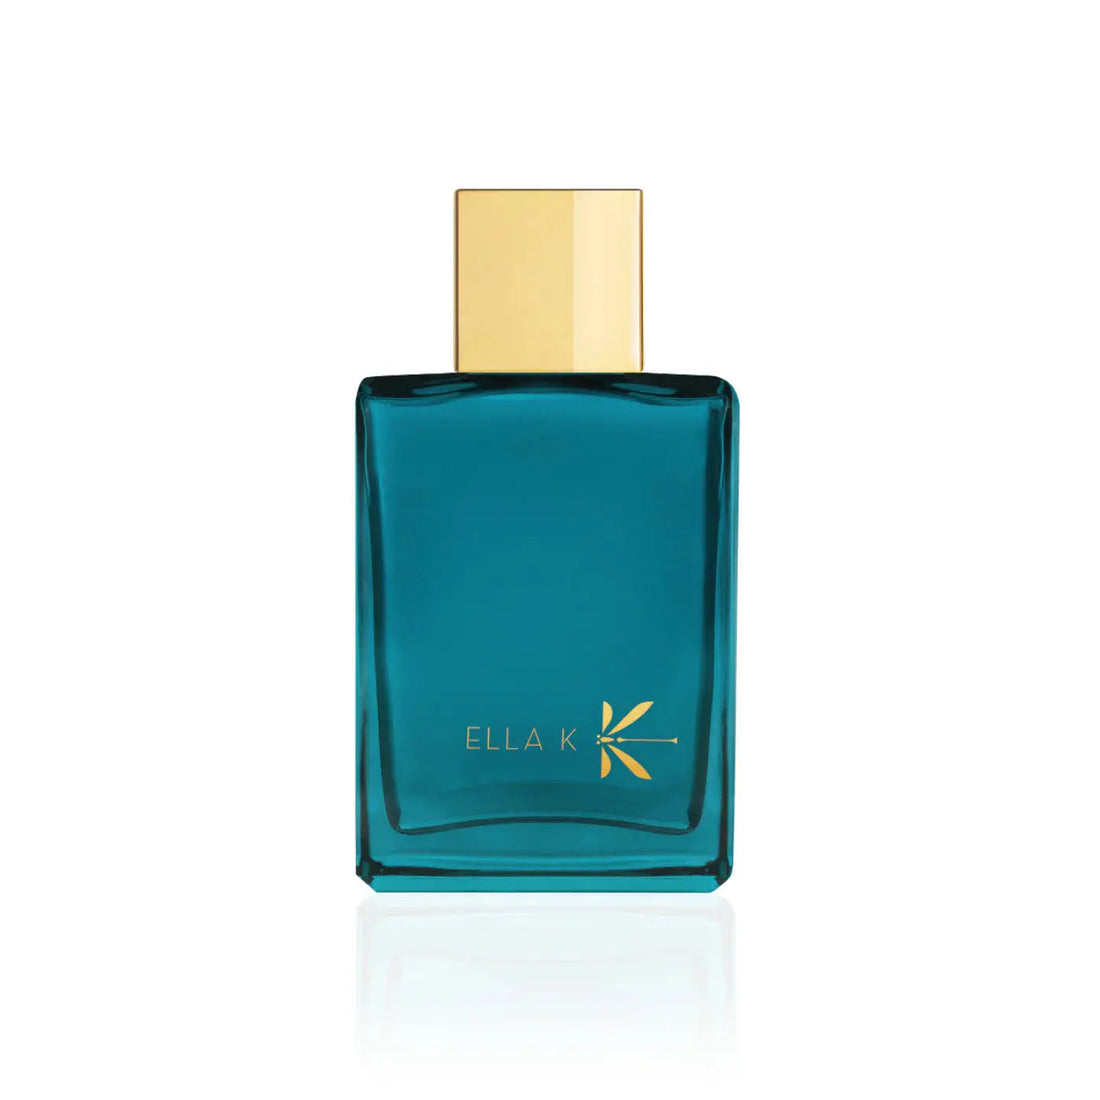 Ella k perfumes Orquídea K - 100 ml eau de parfum